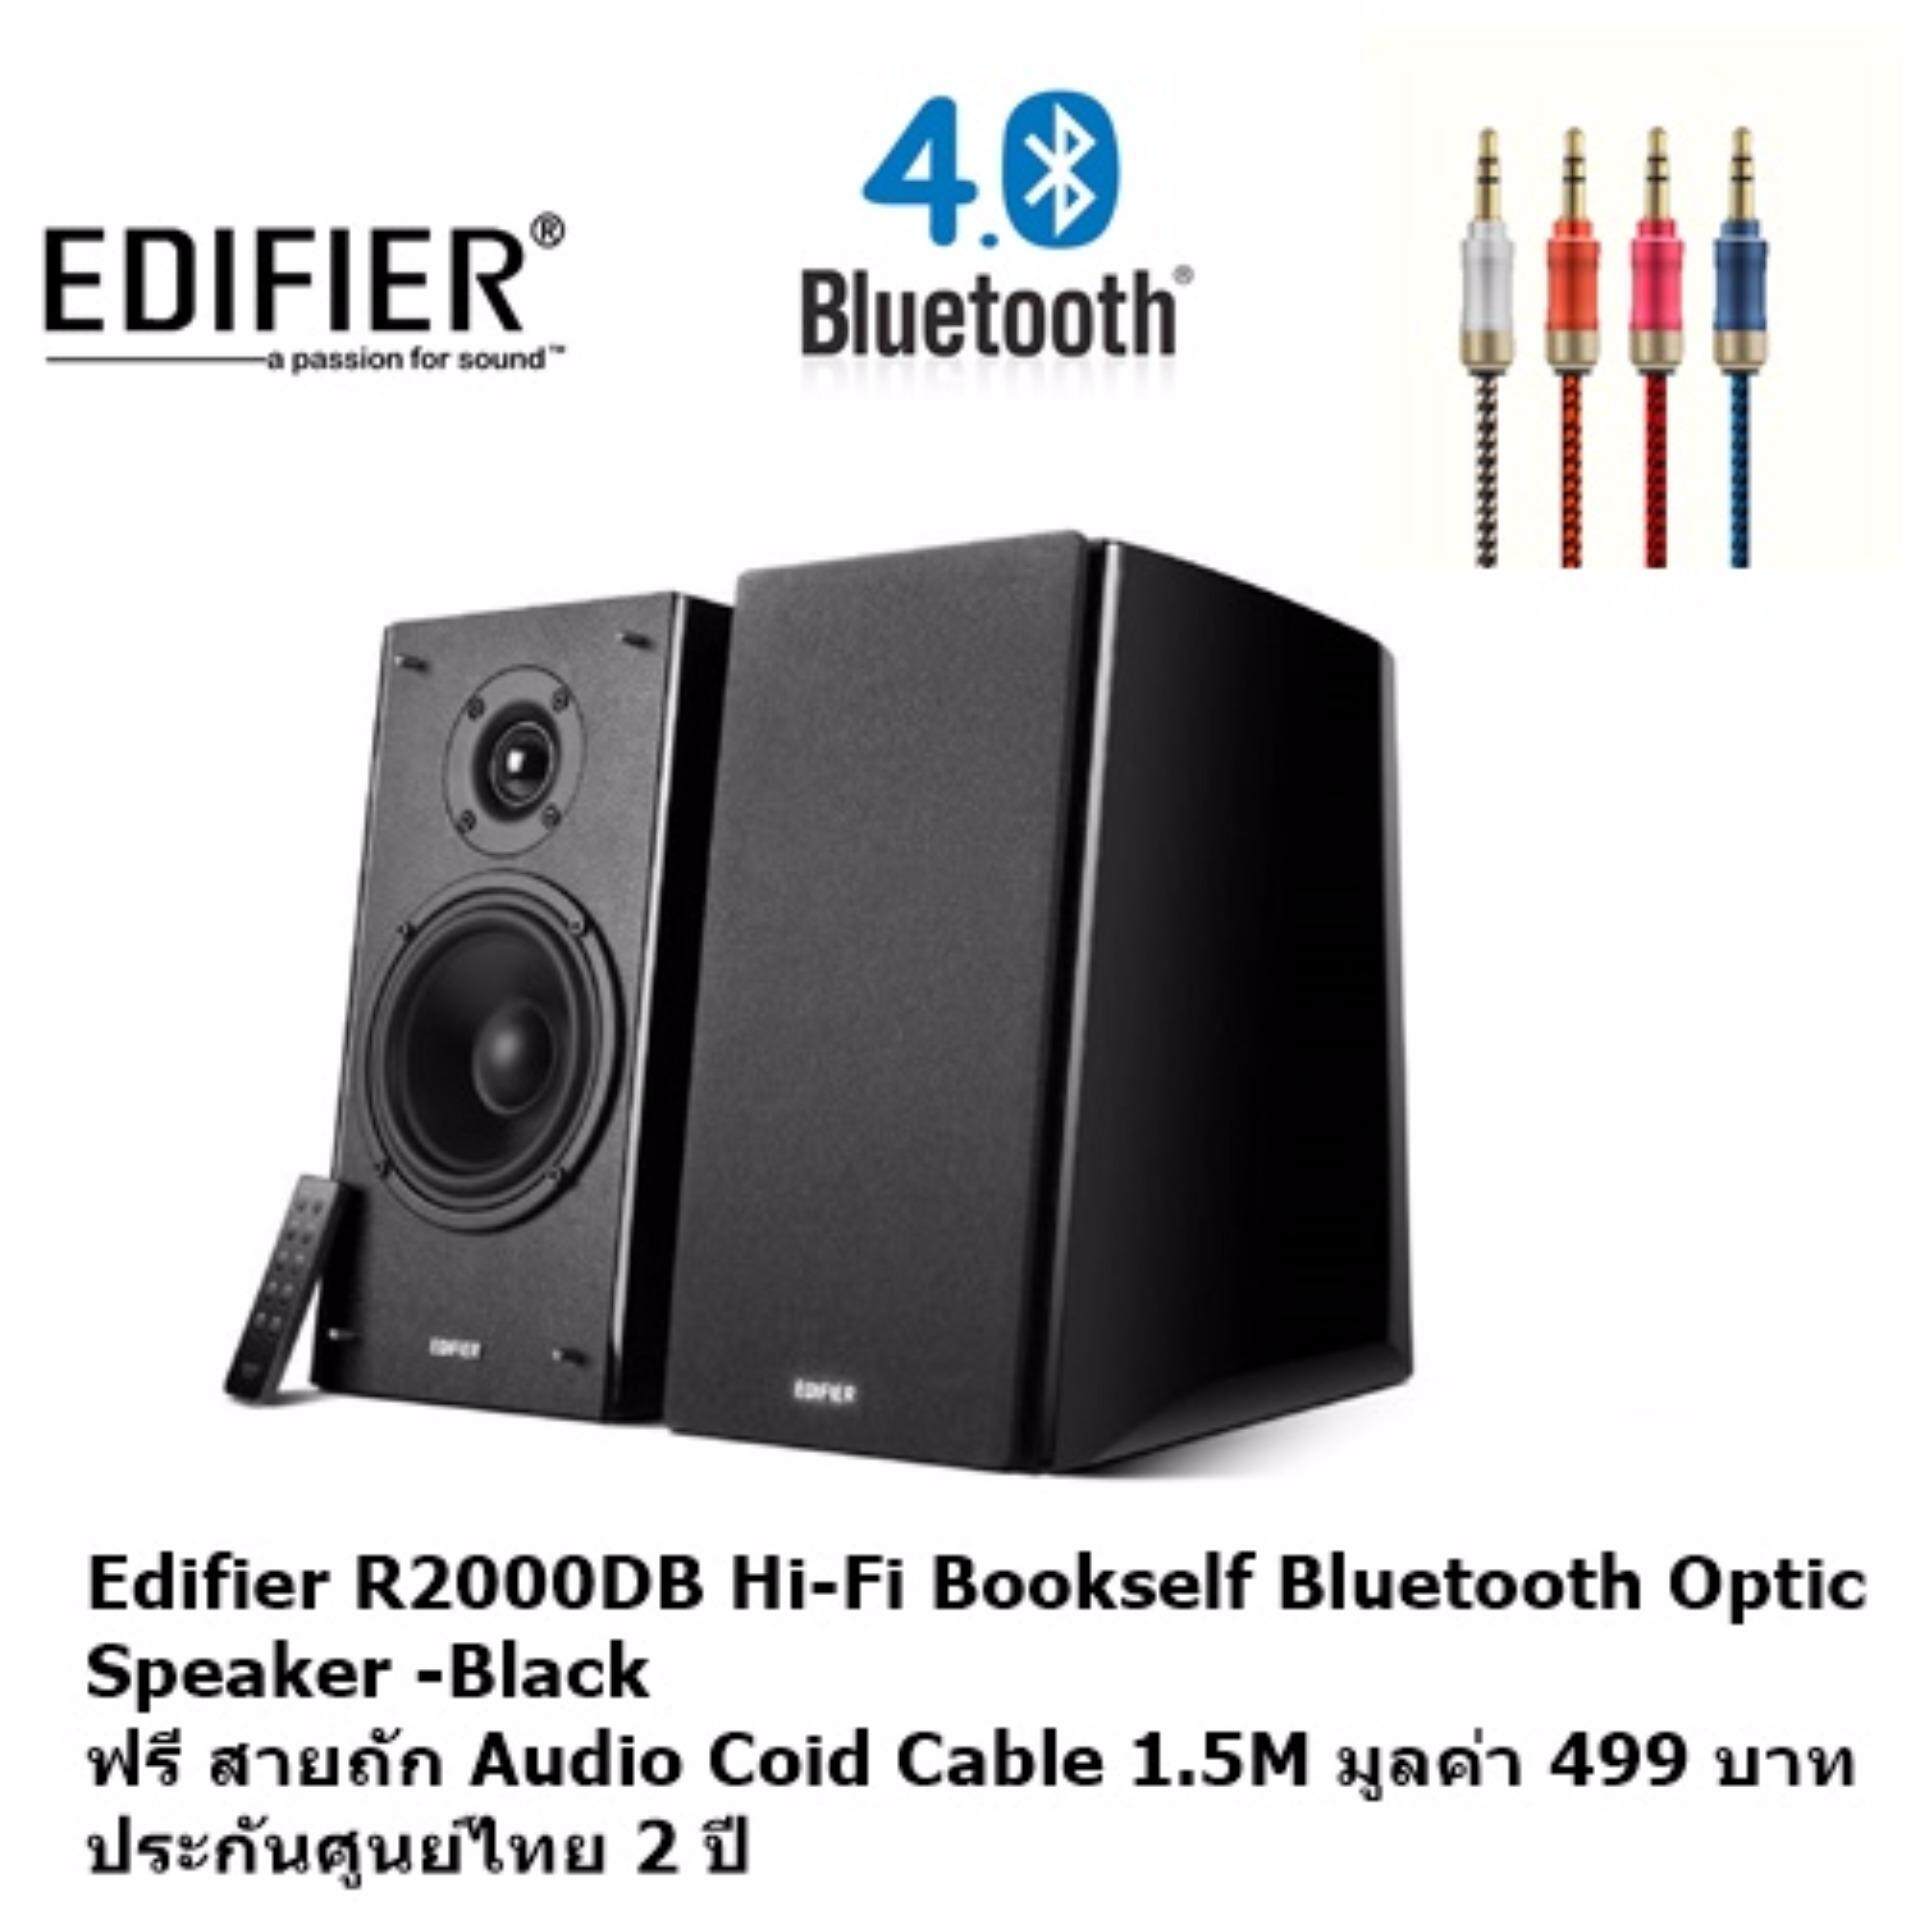 สอนใช้งาน  นราธิวาส Edifier R2000DB ฺBlack Hi-Fi BookSelf Speaker ฟรี สายถัก Audio Coid Cable 1.5M มูลค่า 499 บาท